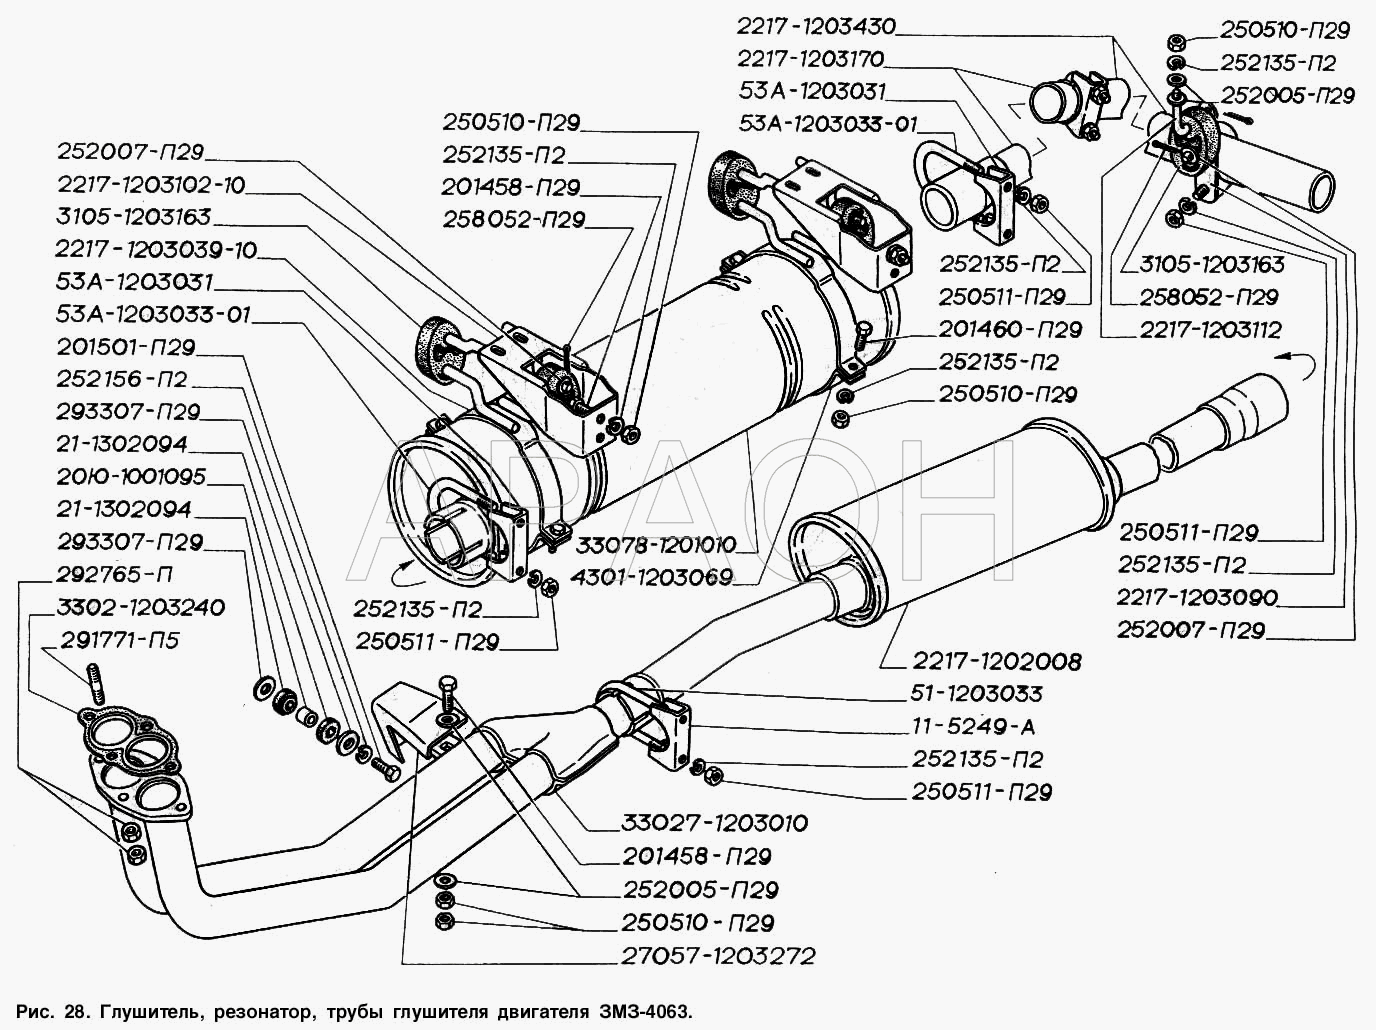 Глушитель, резонатор, трубы глушителя двигателя ЗМЗ-4063 ГАЗ-2217 (Соболь)